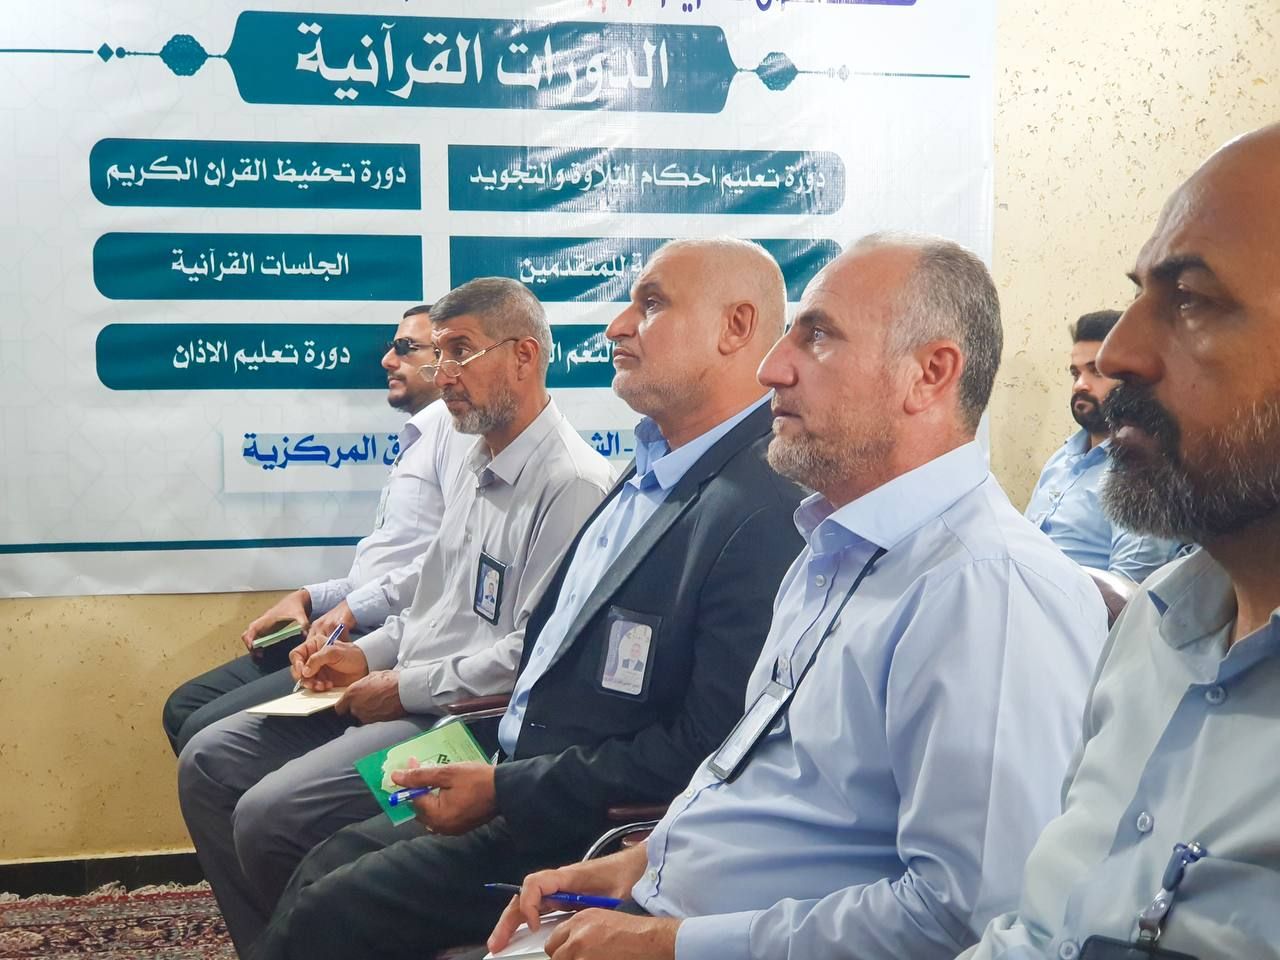 المجمع العلمي يقيم دورات تطويرية للمنتسبين في بغداد